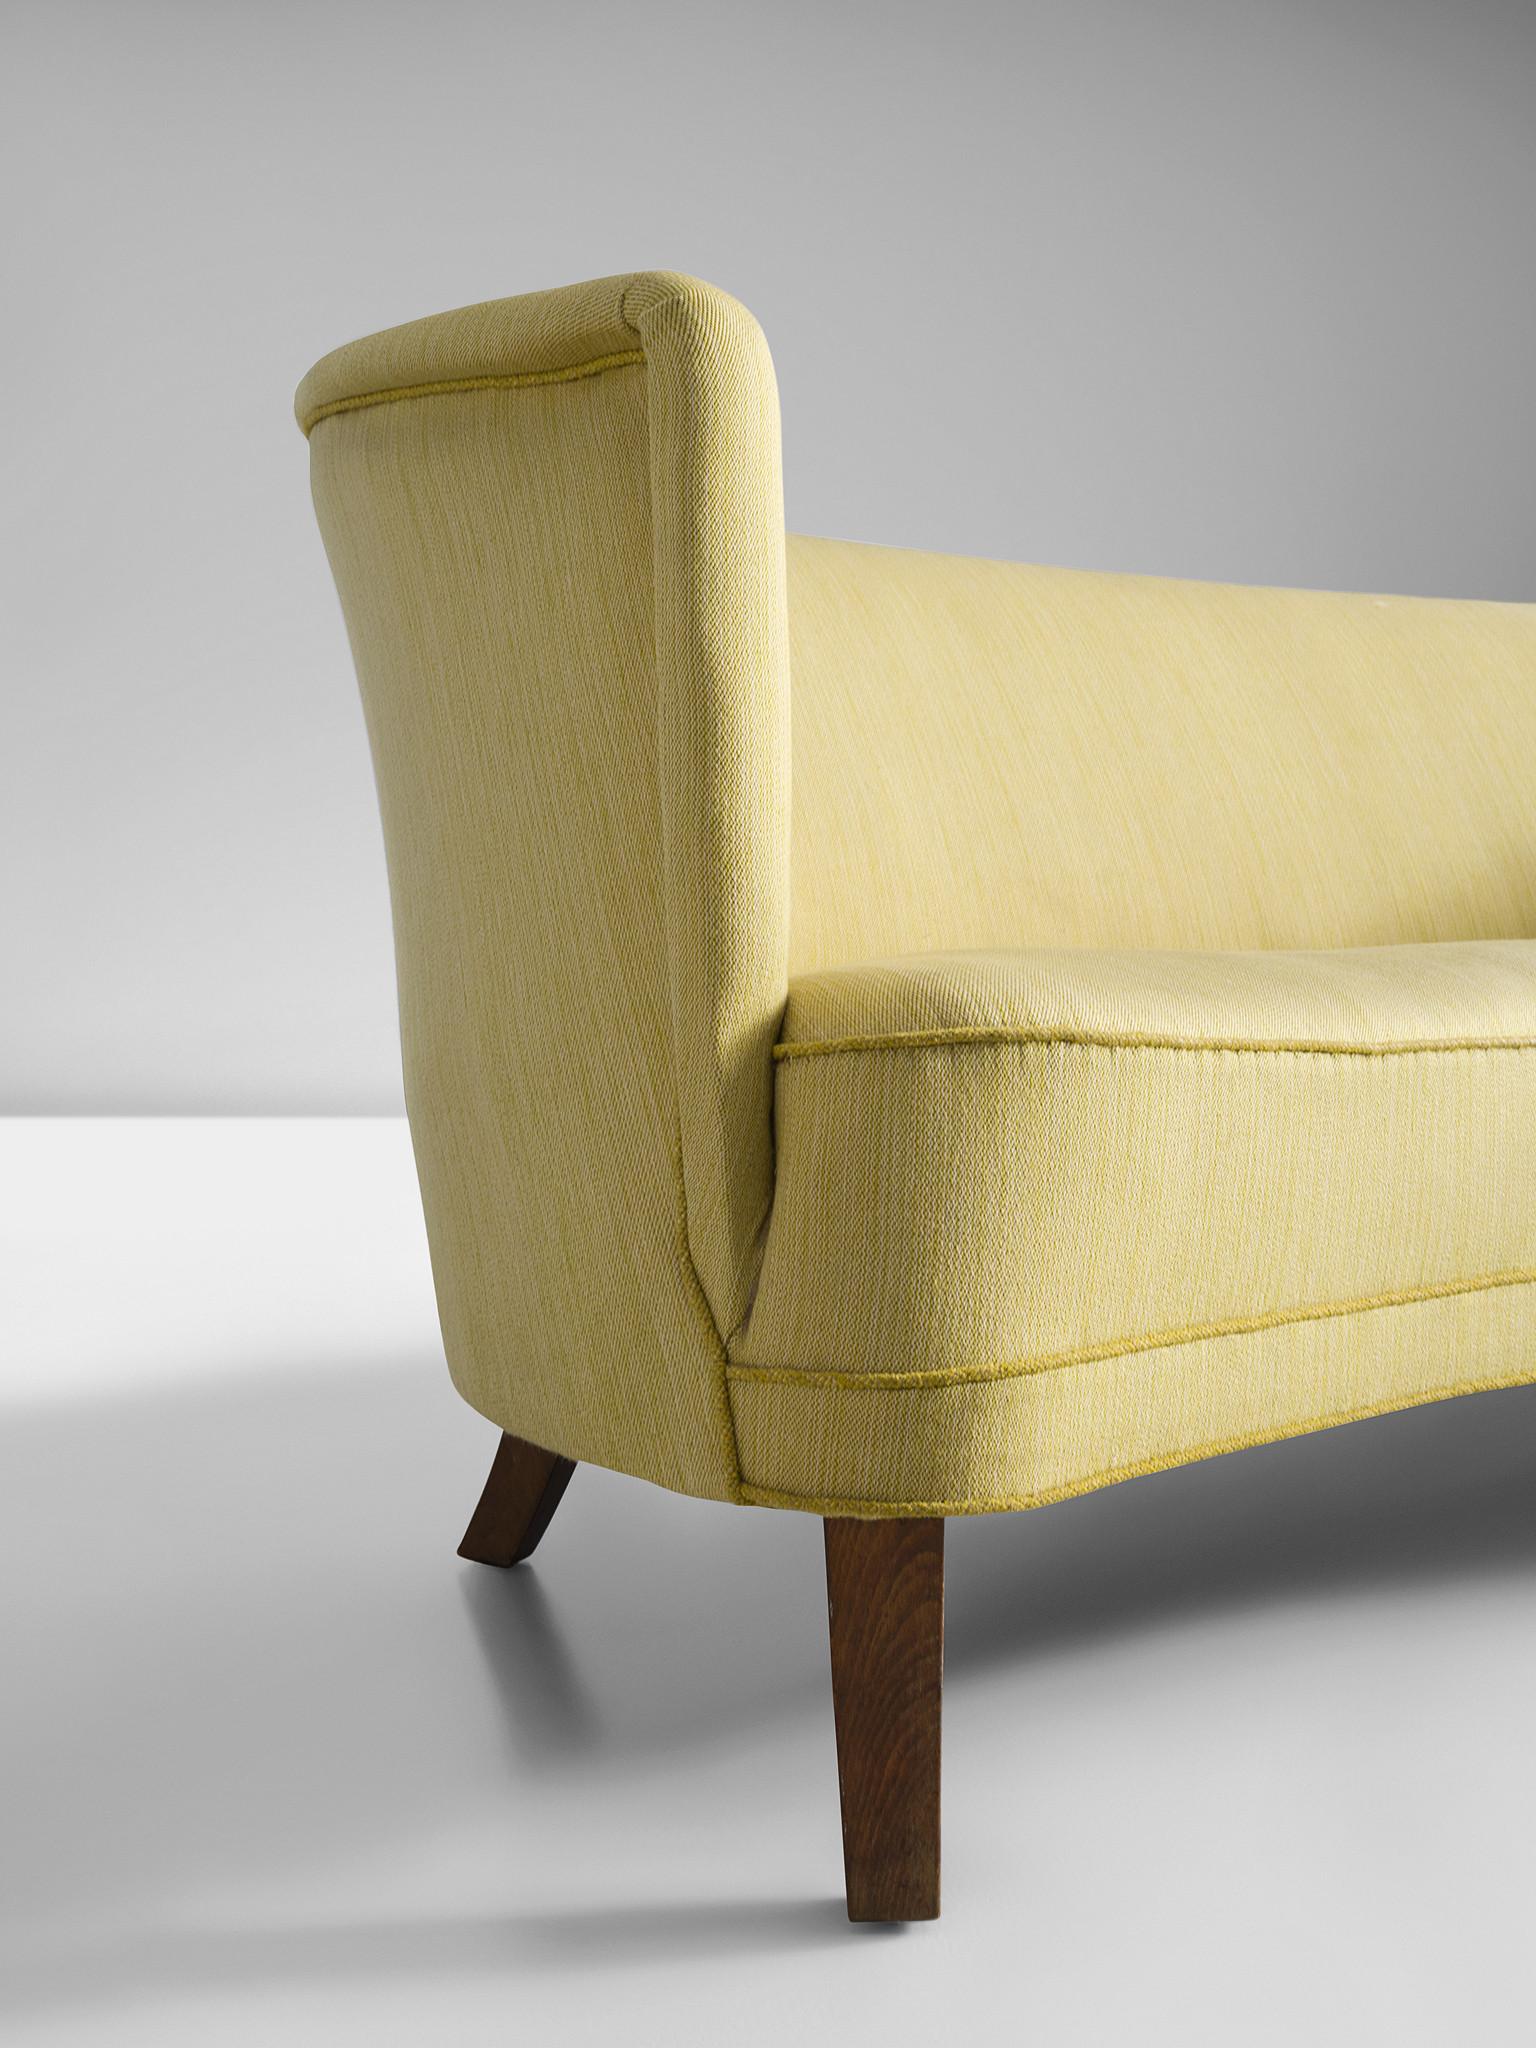 Danish Art Deco 'Banana' Sofa in Yellow Upholstery 1